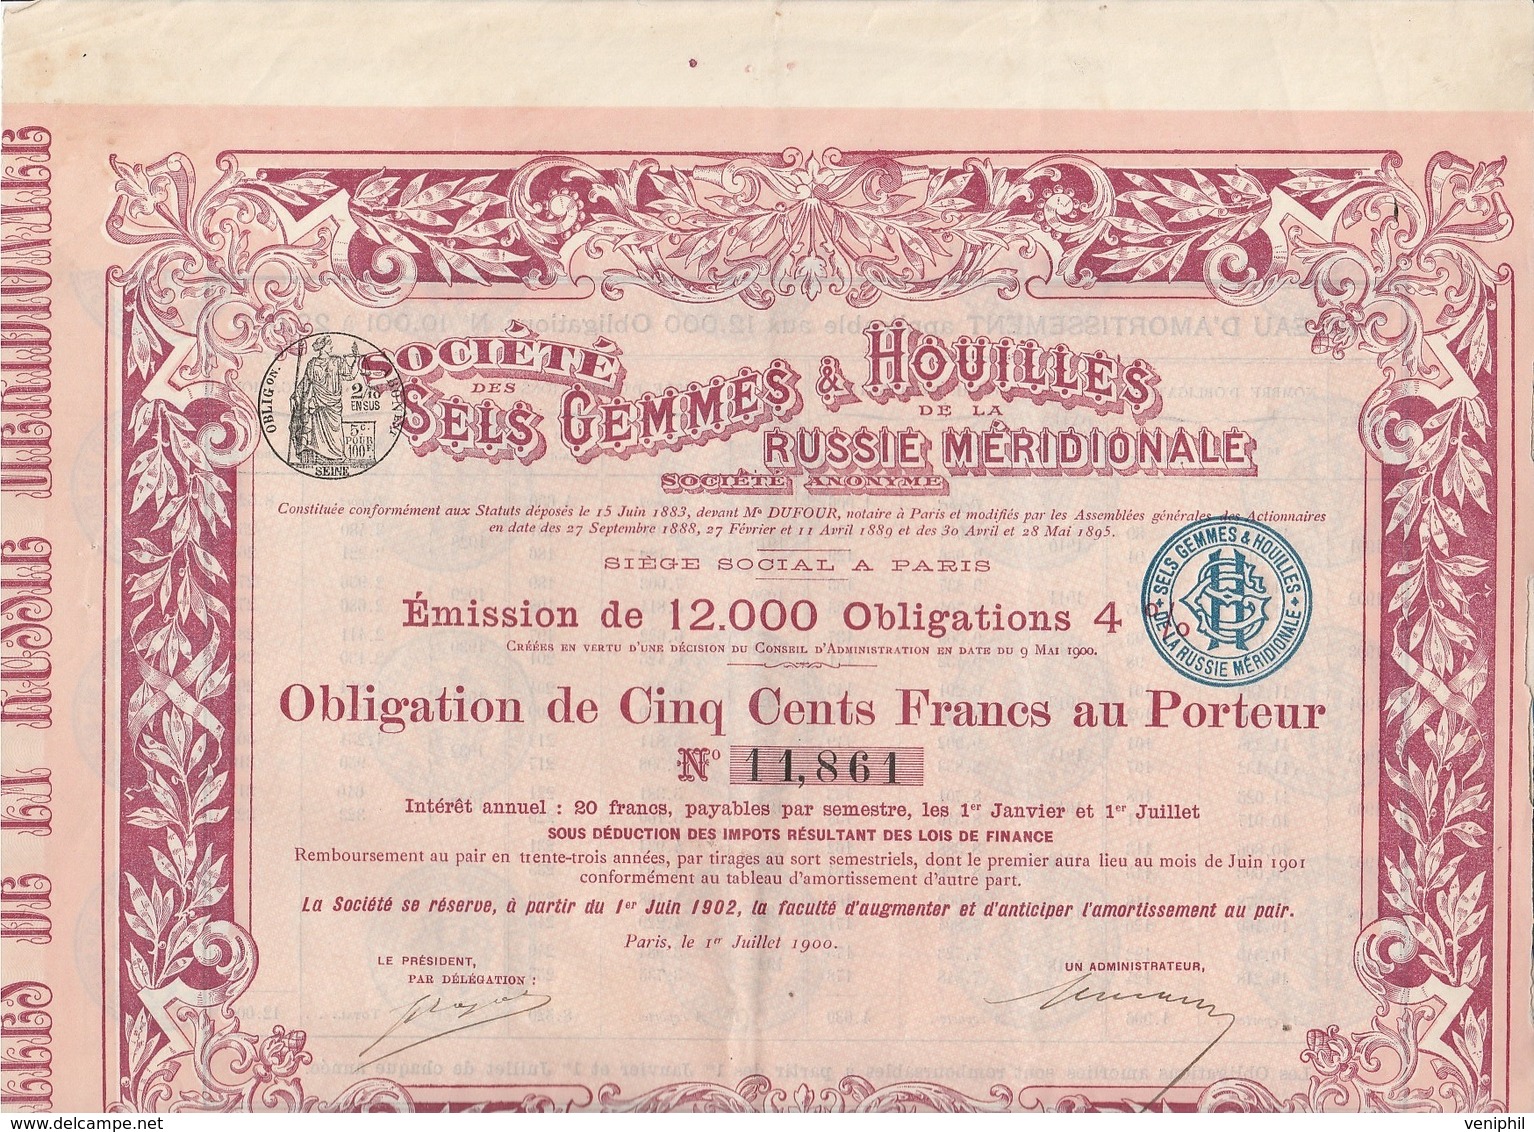 OBLIGATION DE 500 FRANCS - SOCIETE DES SELS GEMMES & HOUILLES DE LA RUSSIE MERIDIONALE - ANNEE 1900 - Mijnen